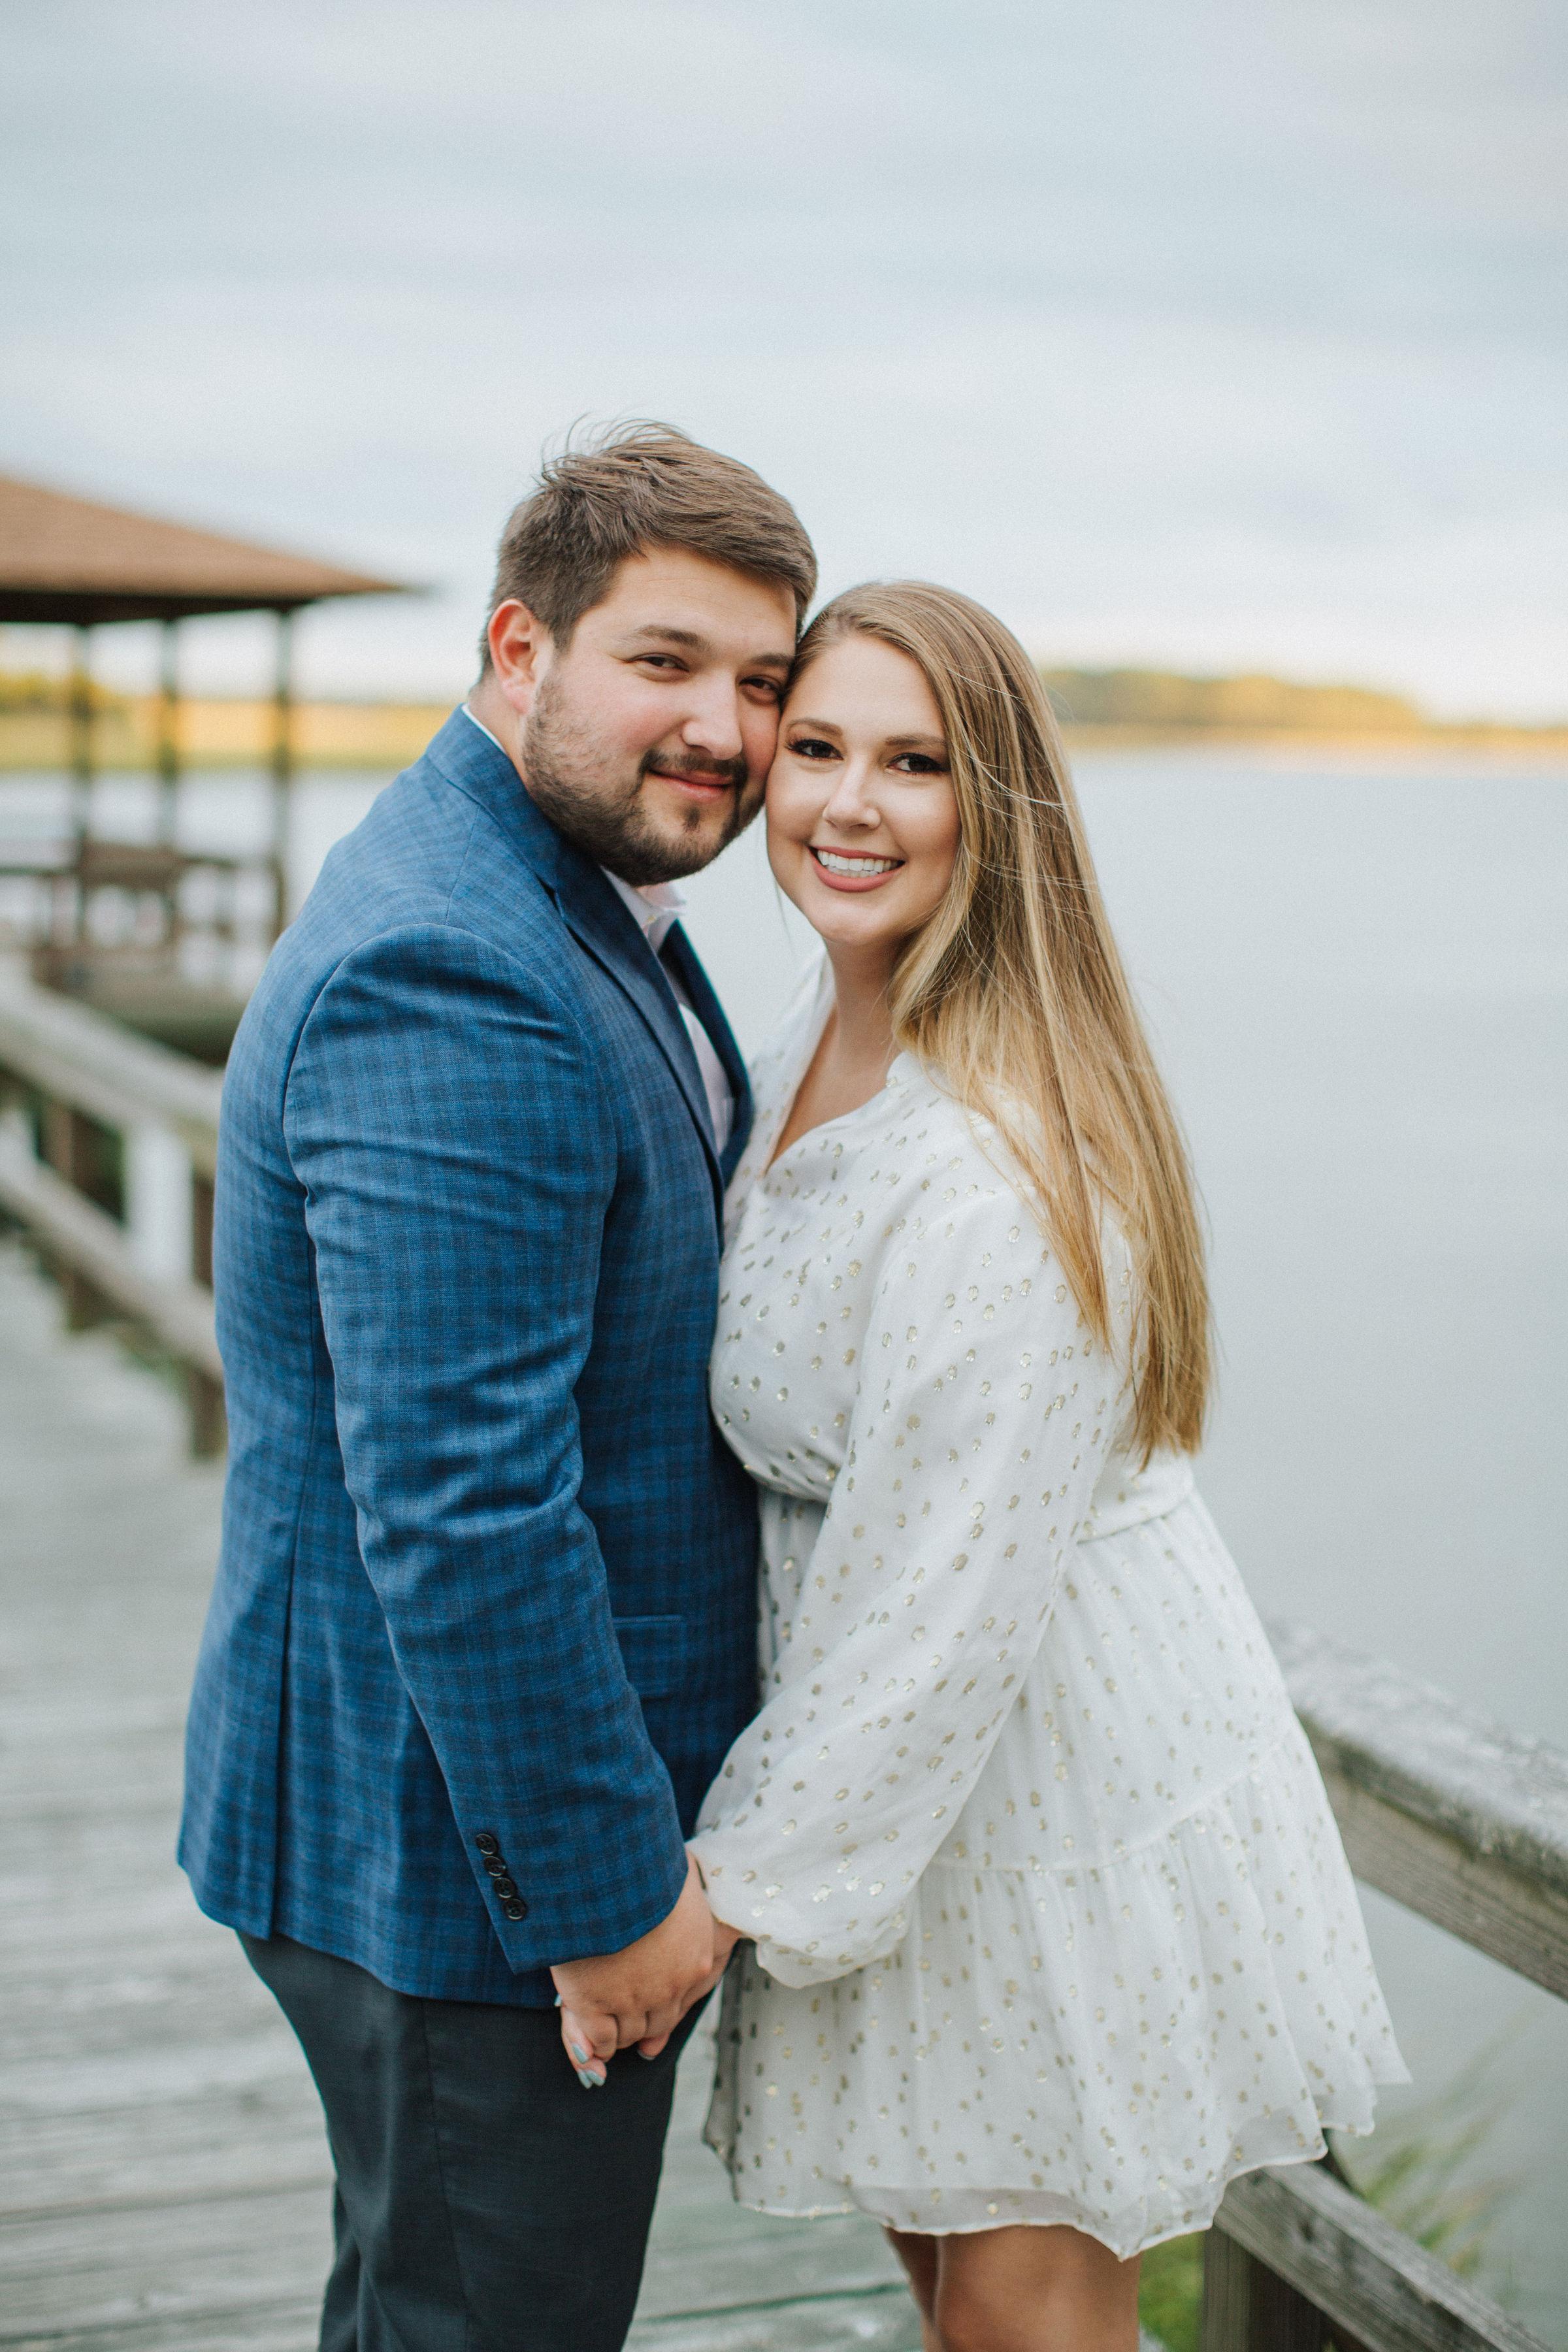 The Wedding Website of Lauren Hall and Tayler Jakubsen